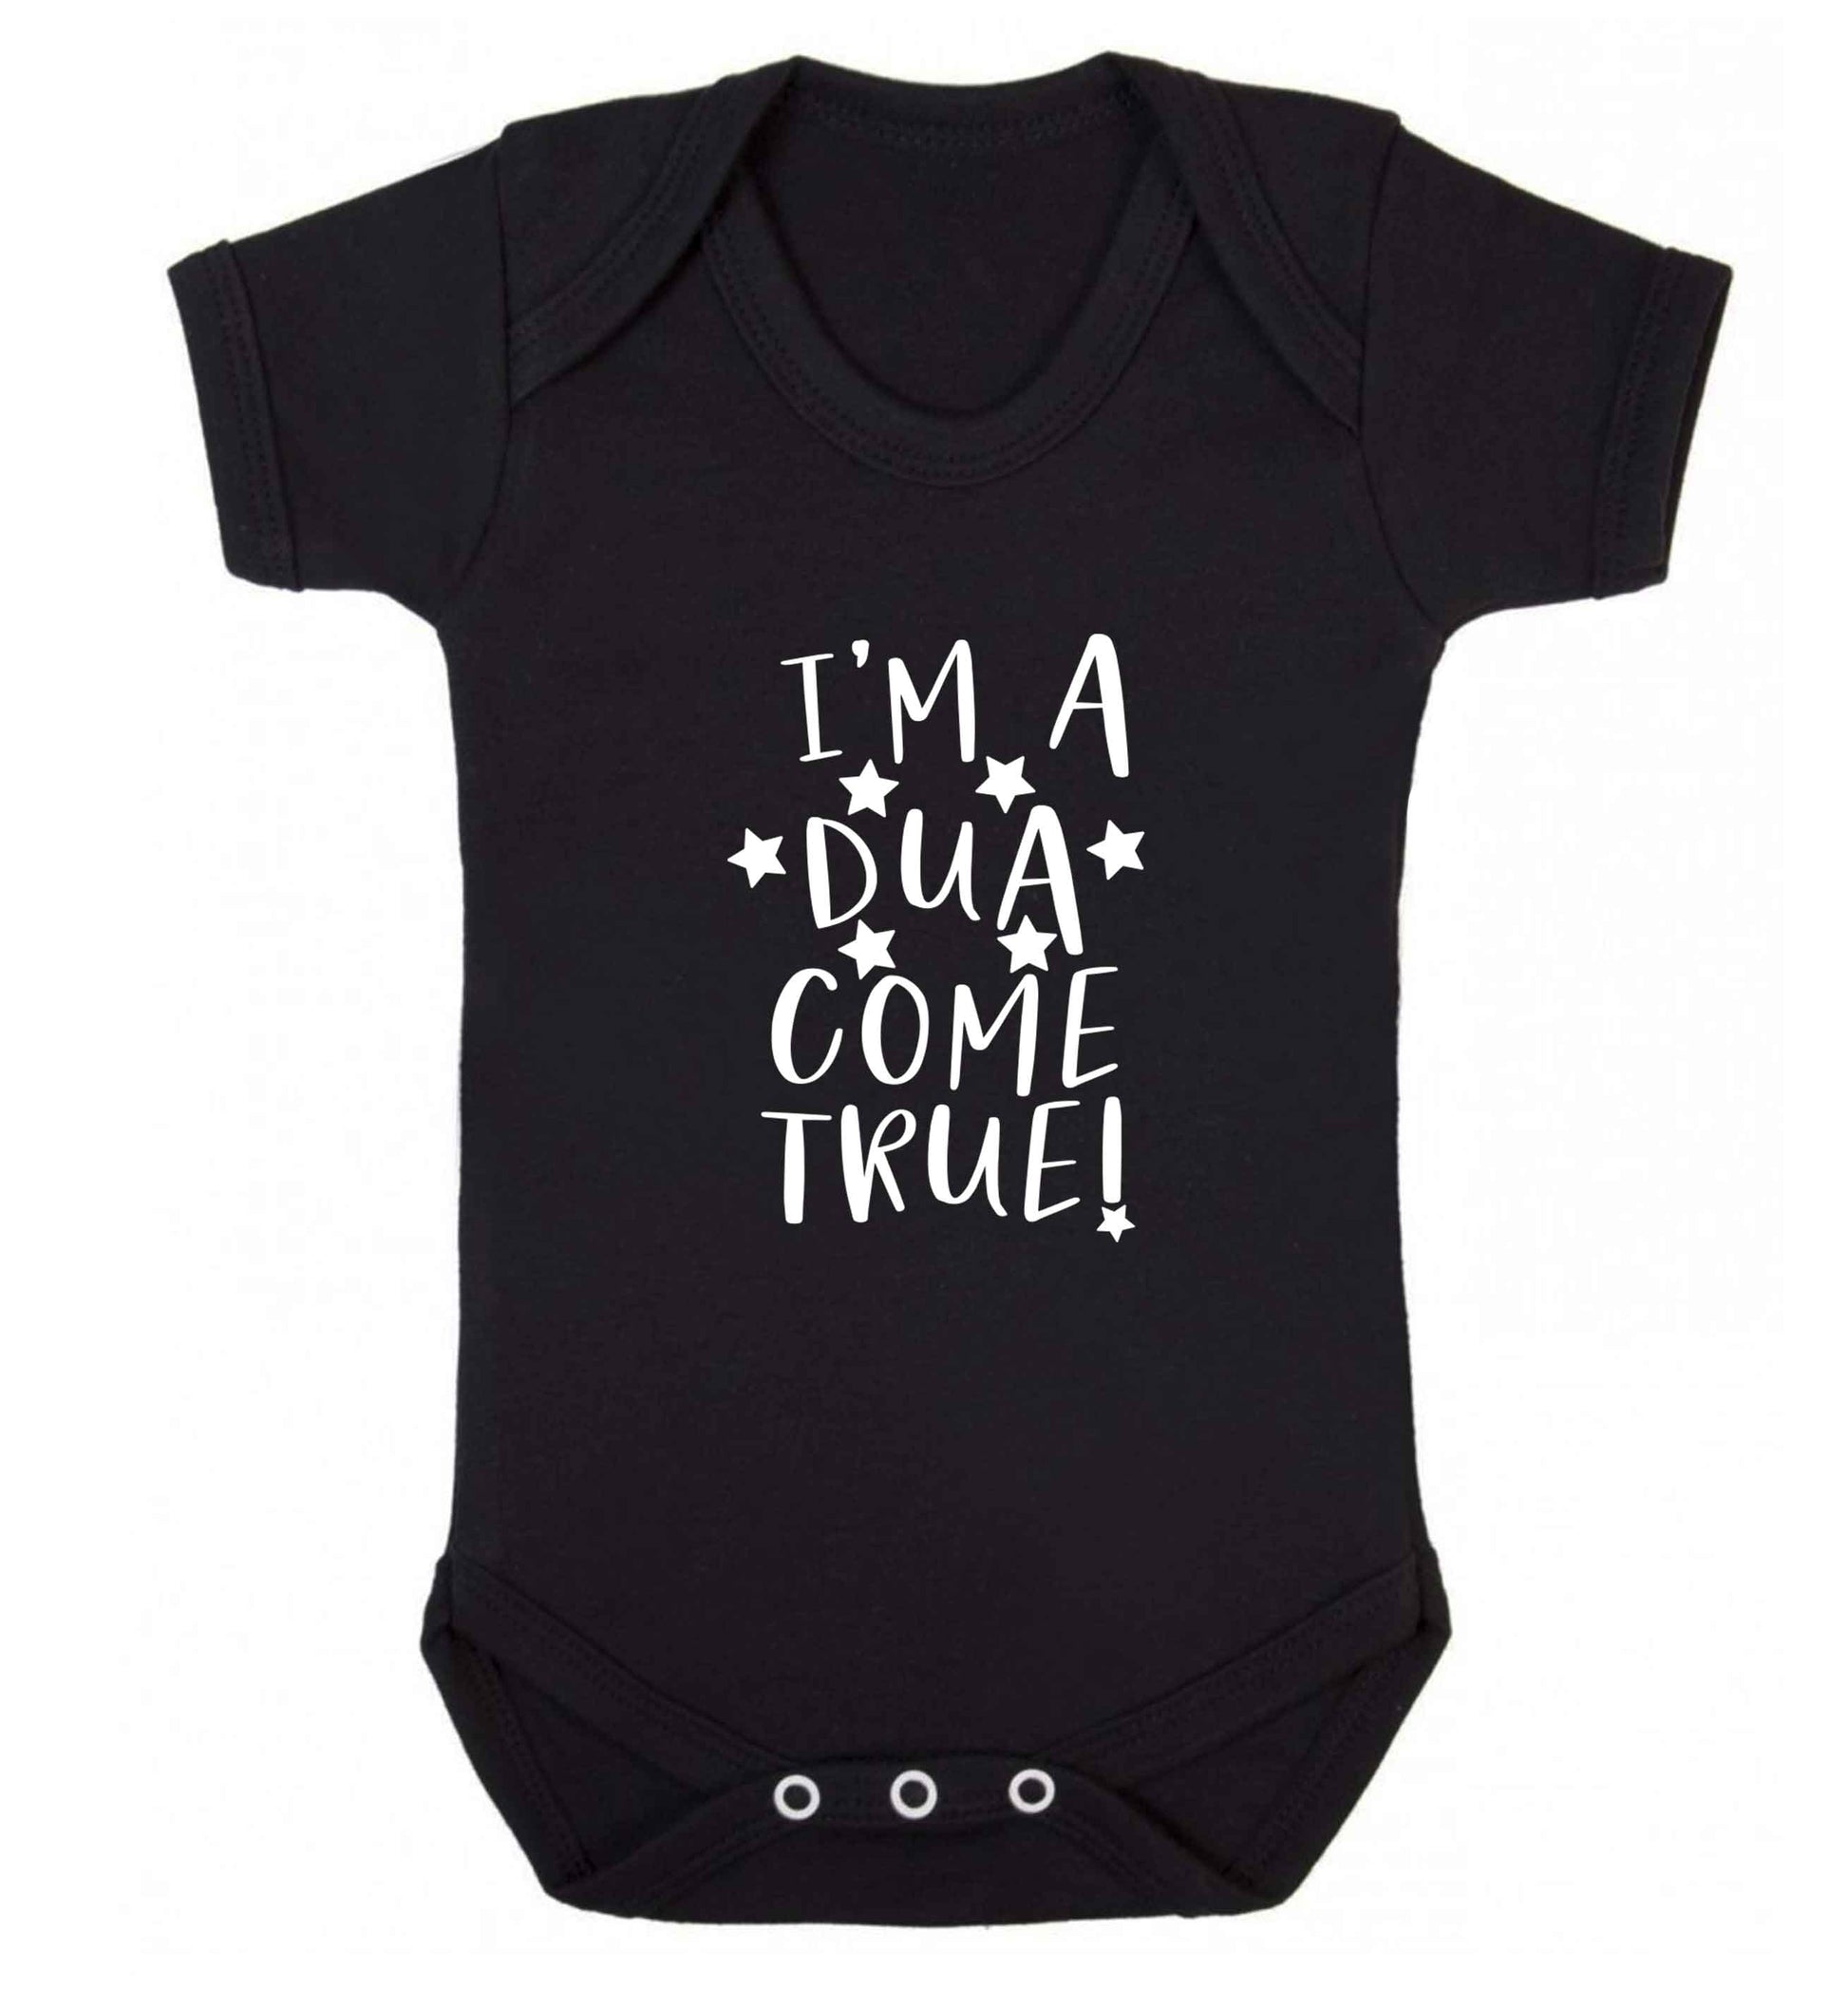 I'm a dua come true baby vest black 18-24 months